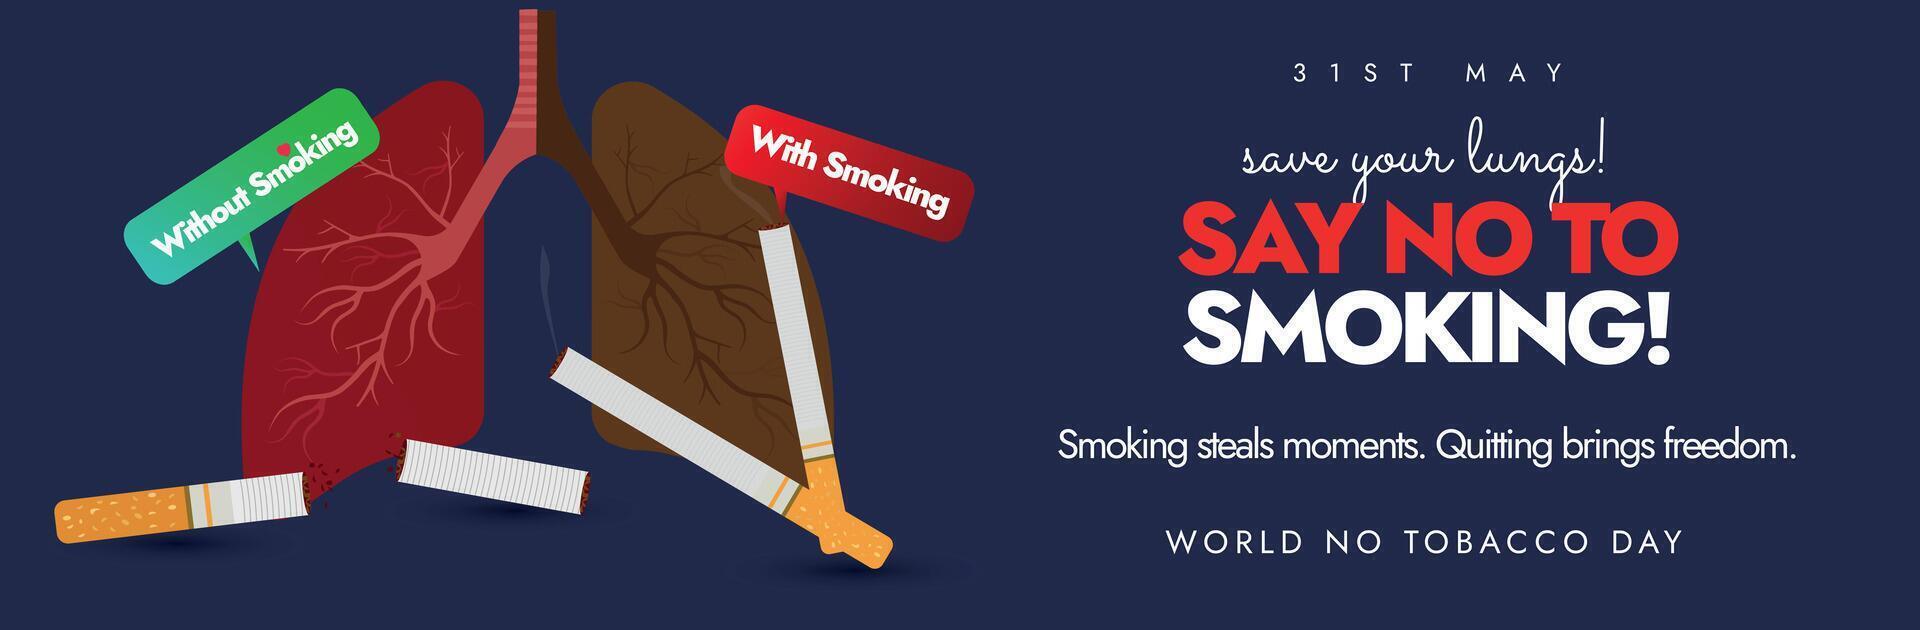 Welt Nein Tabak Tag. 31 kann Welt Nein Tabak Tag Startseite Banner, Post mit Innerhalb Aussicht von Lunge zeigen das Unterschied zwischen Raucher Lunge, nicht Raucher gesund Lunge. sagen Nein zu Rauchen konzeptionelle Banner. vektor